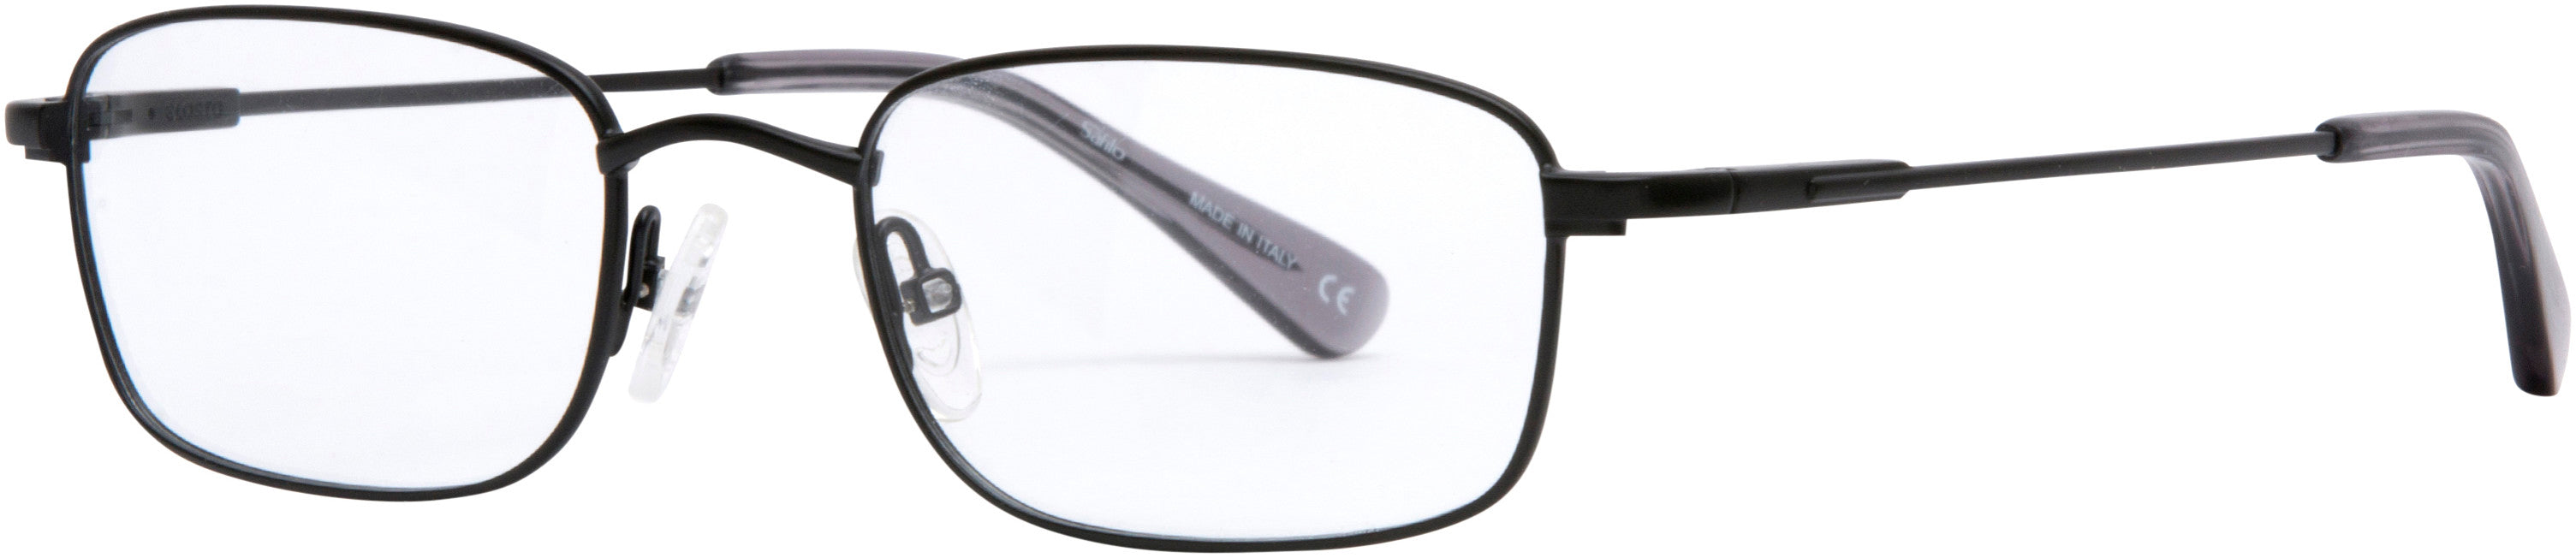  Elasta 7225 Rectangular Eyeglasses 0003-0003  Matte Black (00 Demo Lens)